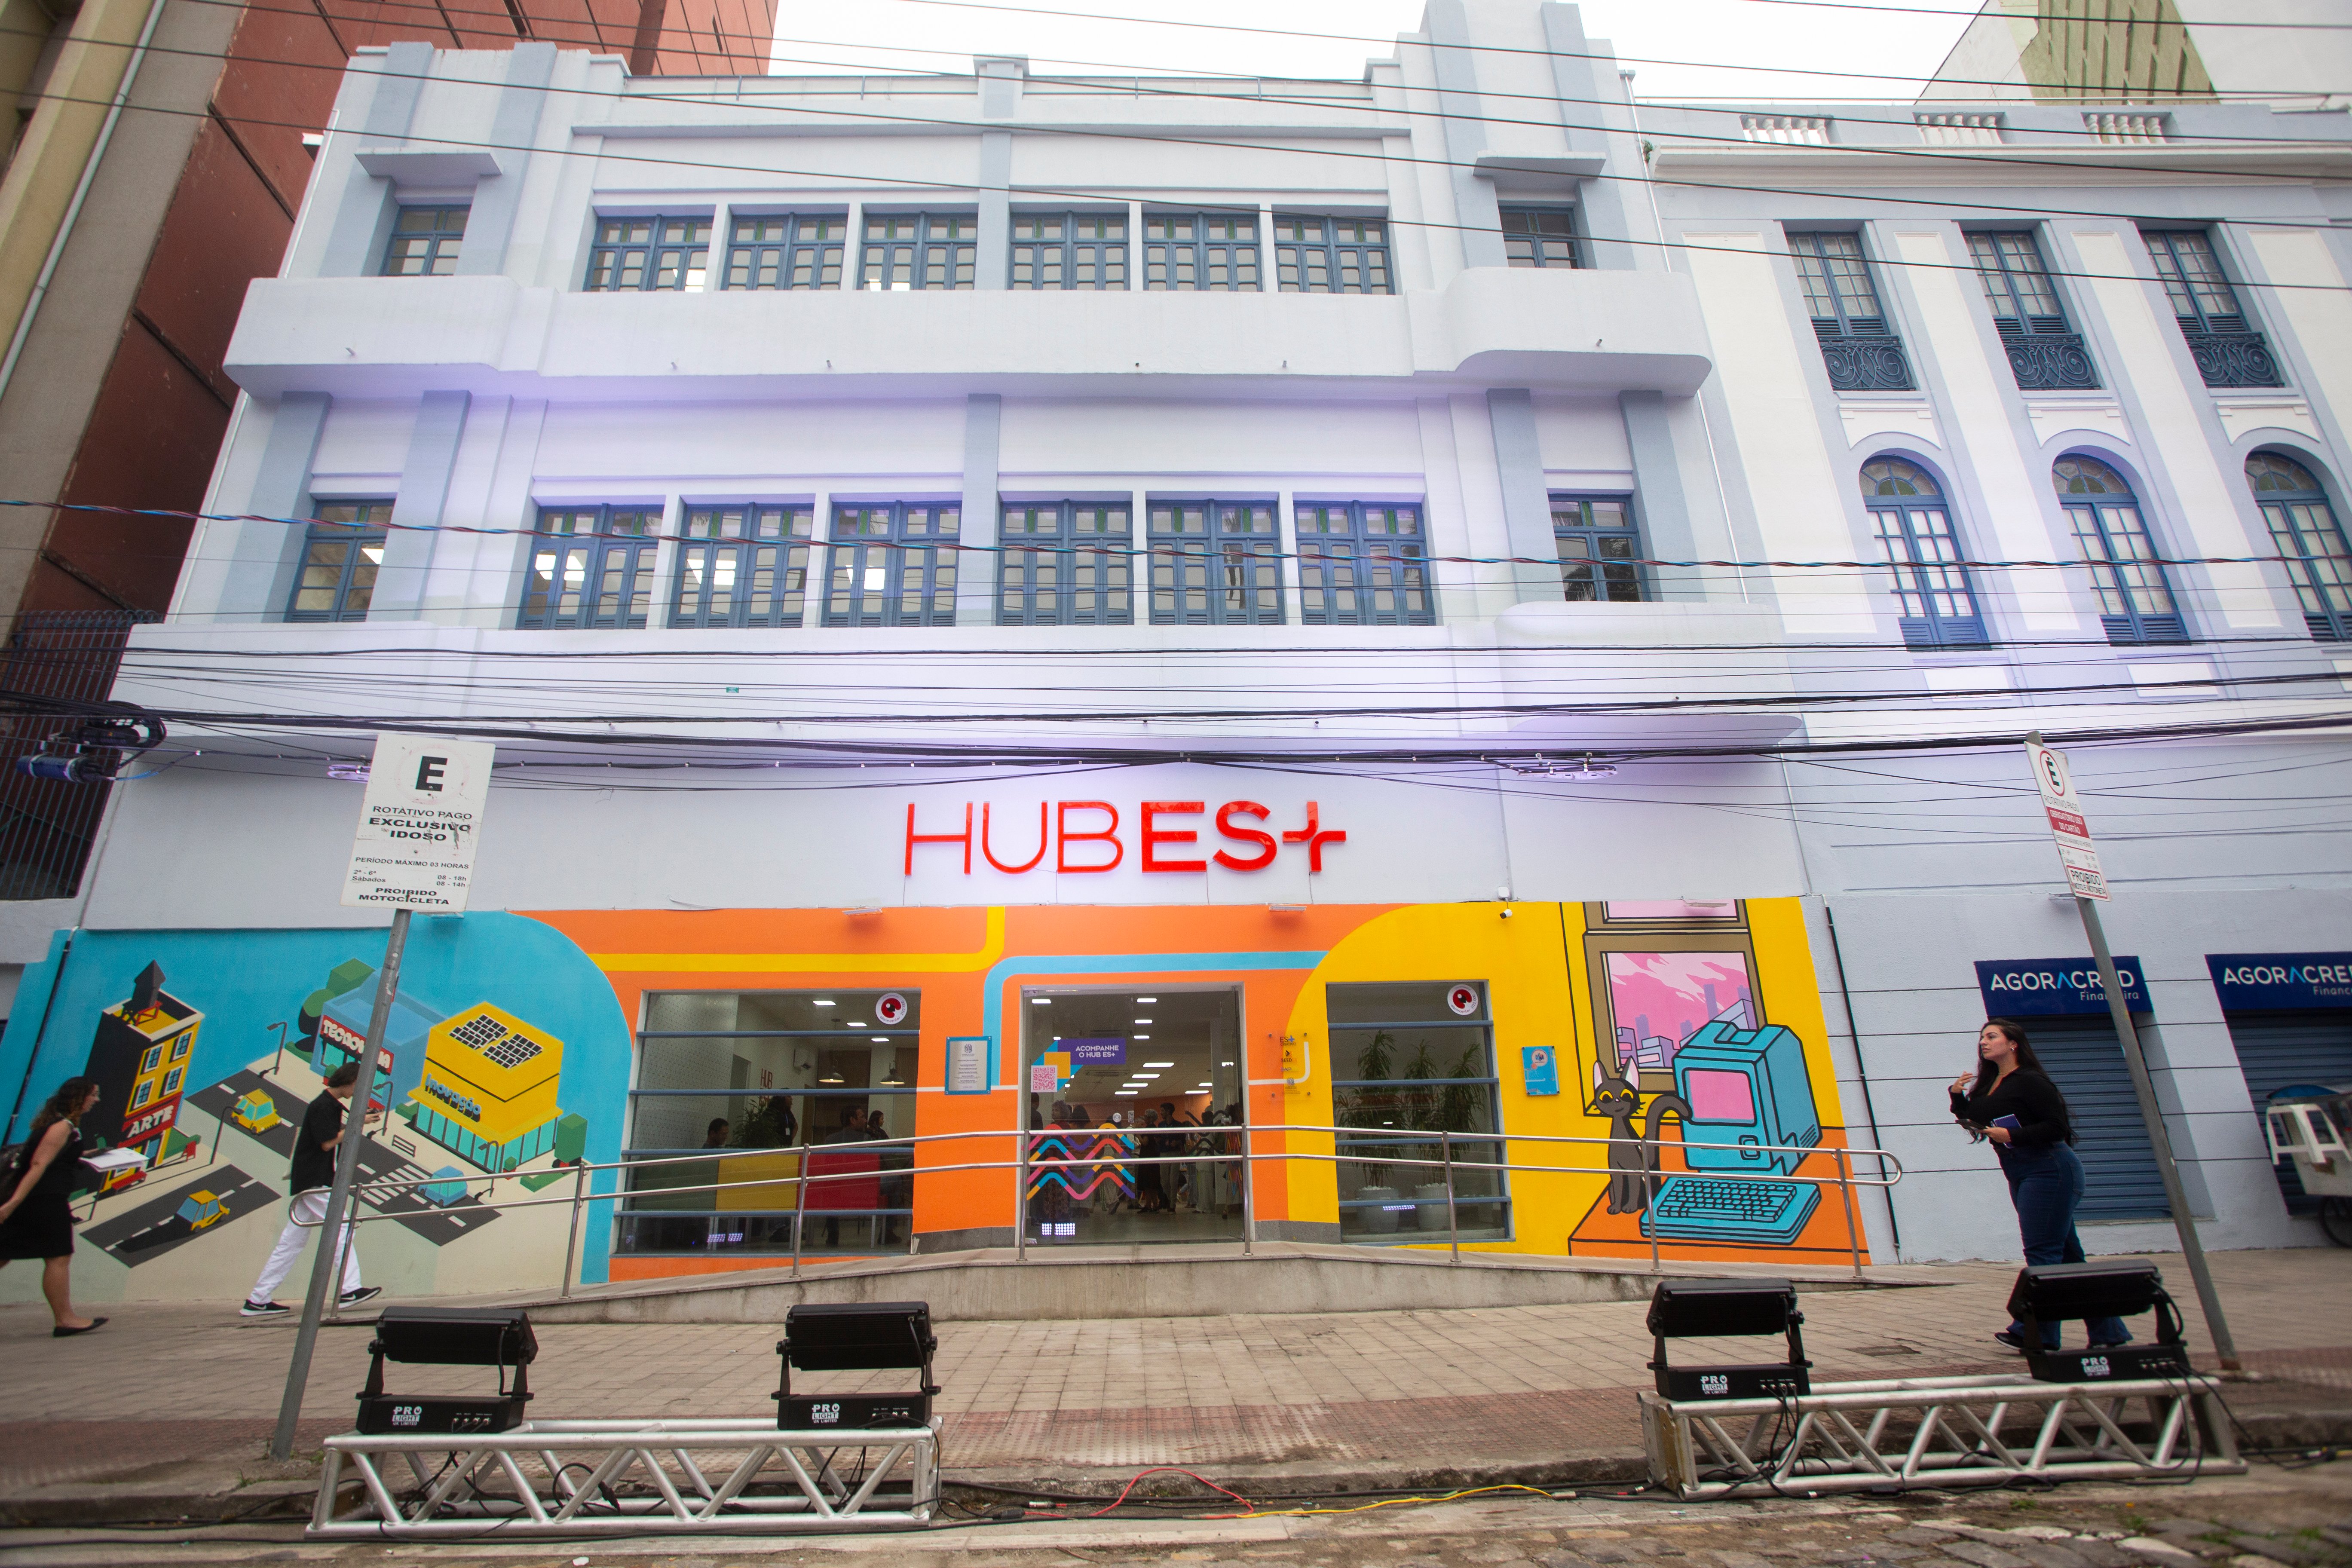 Localizado em Vitória, o Hub ES+ é um espaço aberto às ideias criativas, sendo o primeiro hub público do Espírito Santo